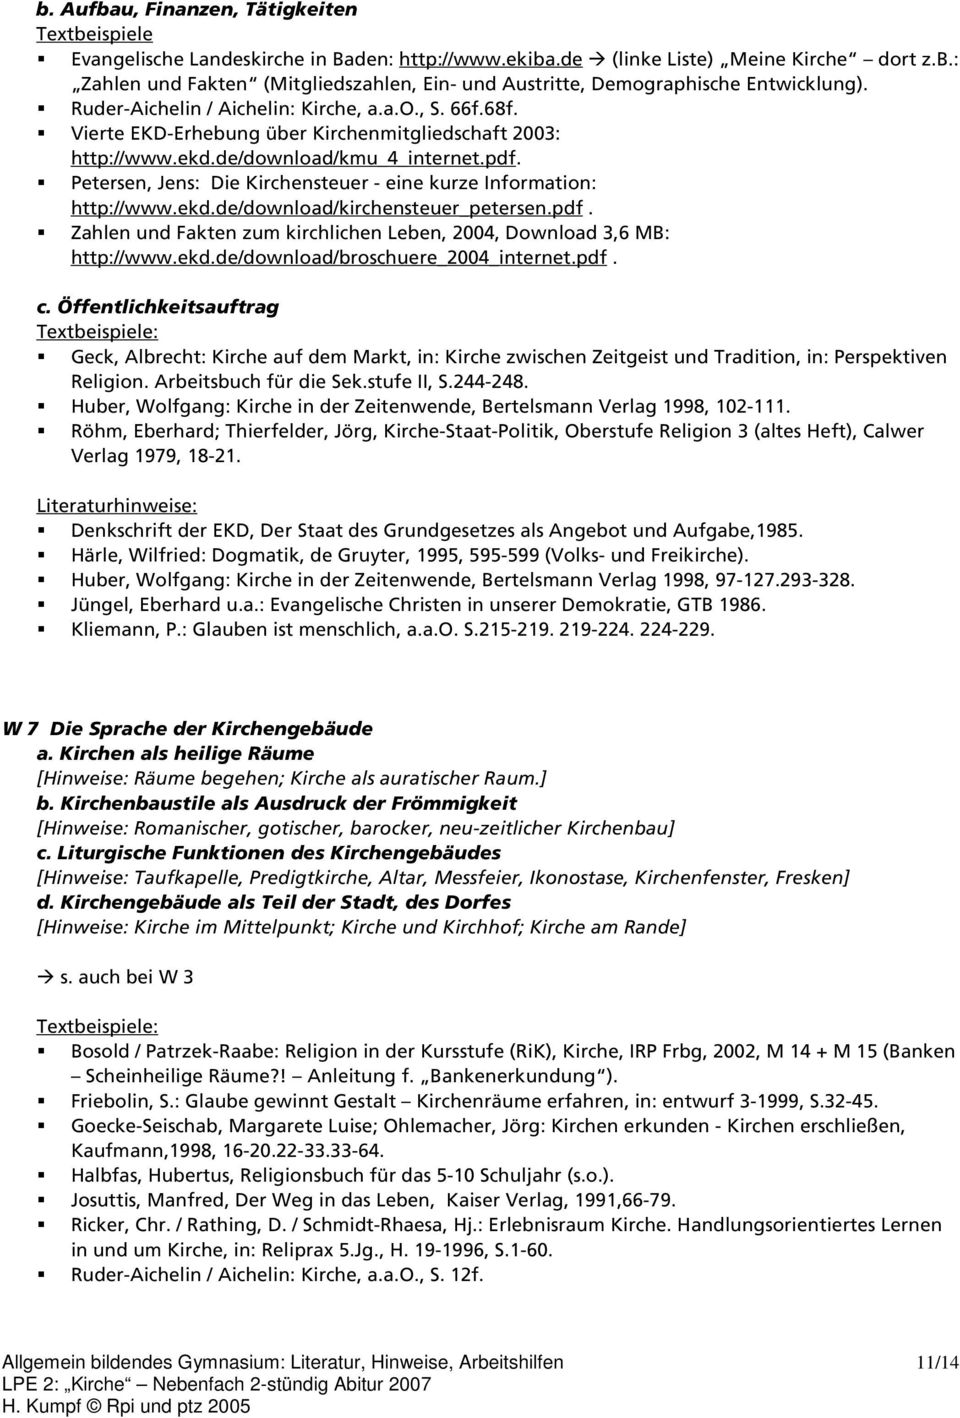 Petersen, Jens: Die Kirchensteuer - eine kurze Information: http://www.ekd.de/download/kirchensteuer_petersen.pdf. Zahlen und Fakten zum kirchlichen Leben, 2004, Download 3,6 MB: http://www.ekd.de/download/broschuere_2004_internet.